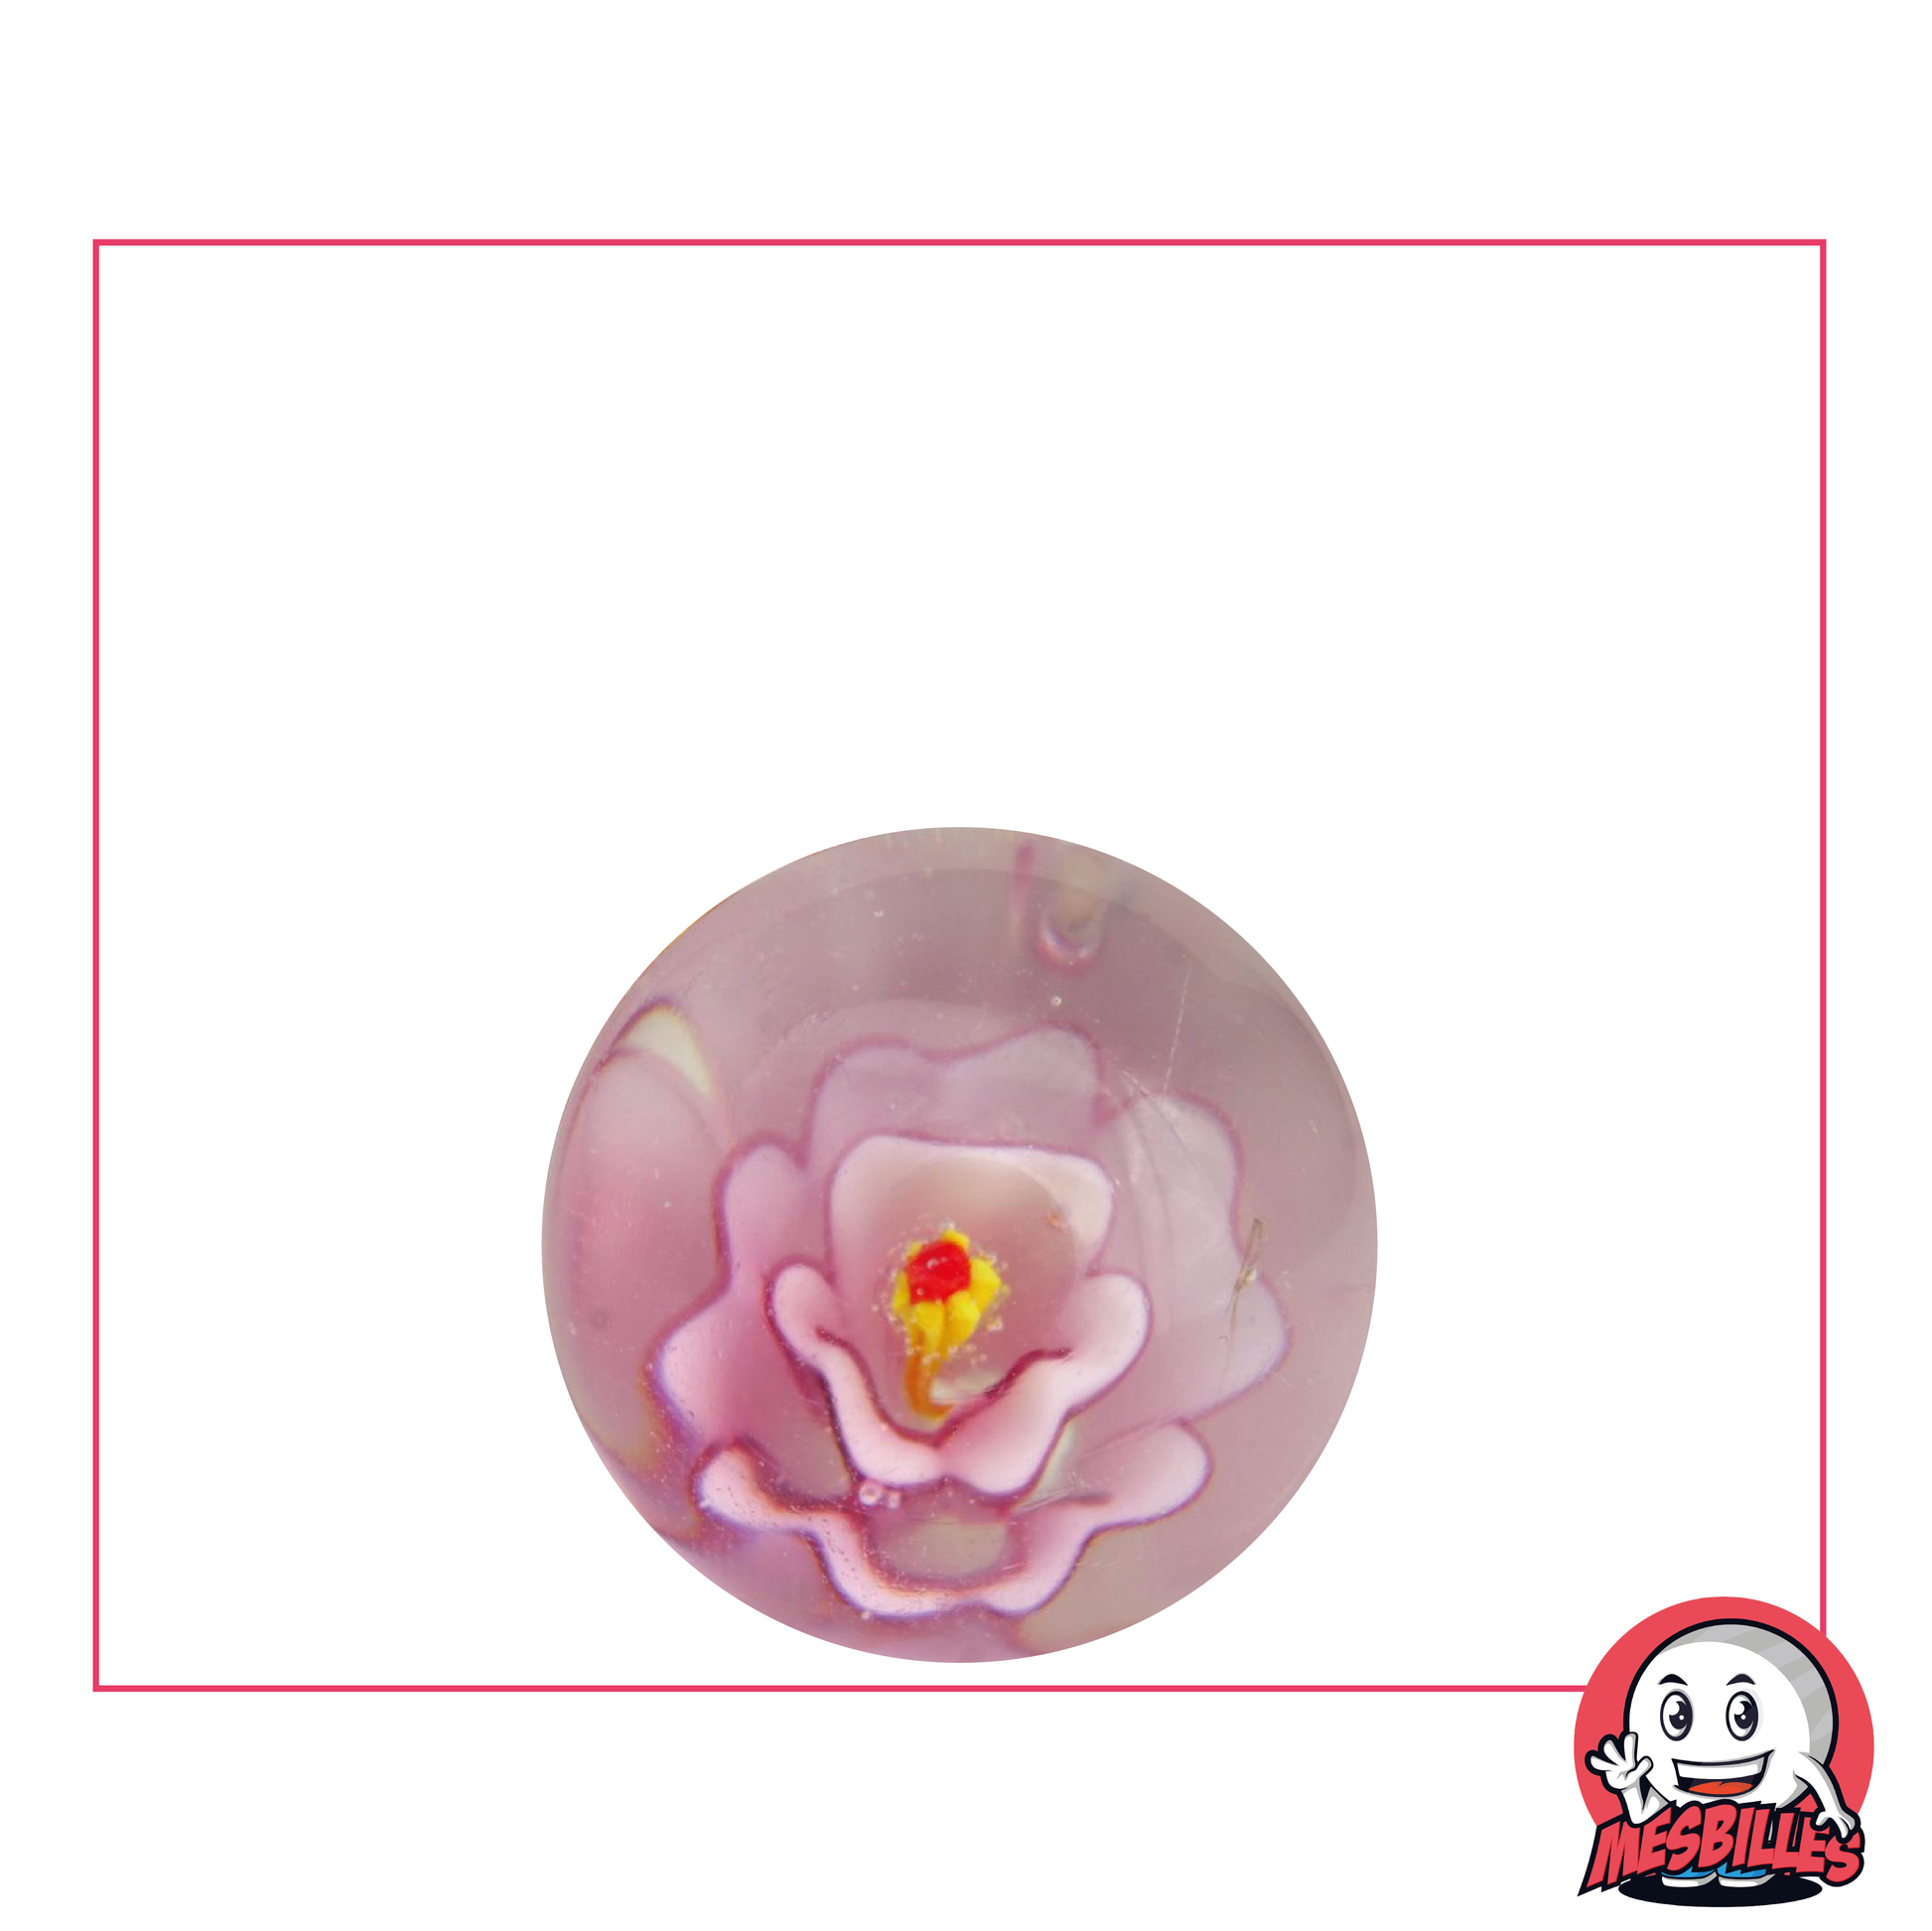 Bille d'Art Fleur Rose, bille en cristal translucide avec une fleur rose en incrustation au millieu